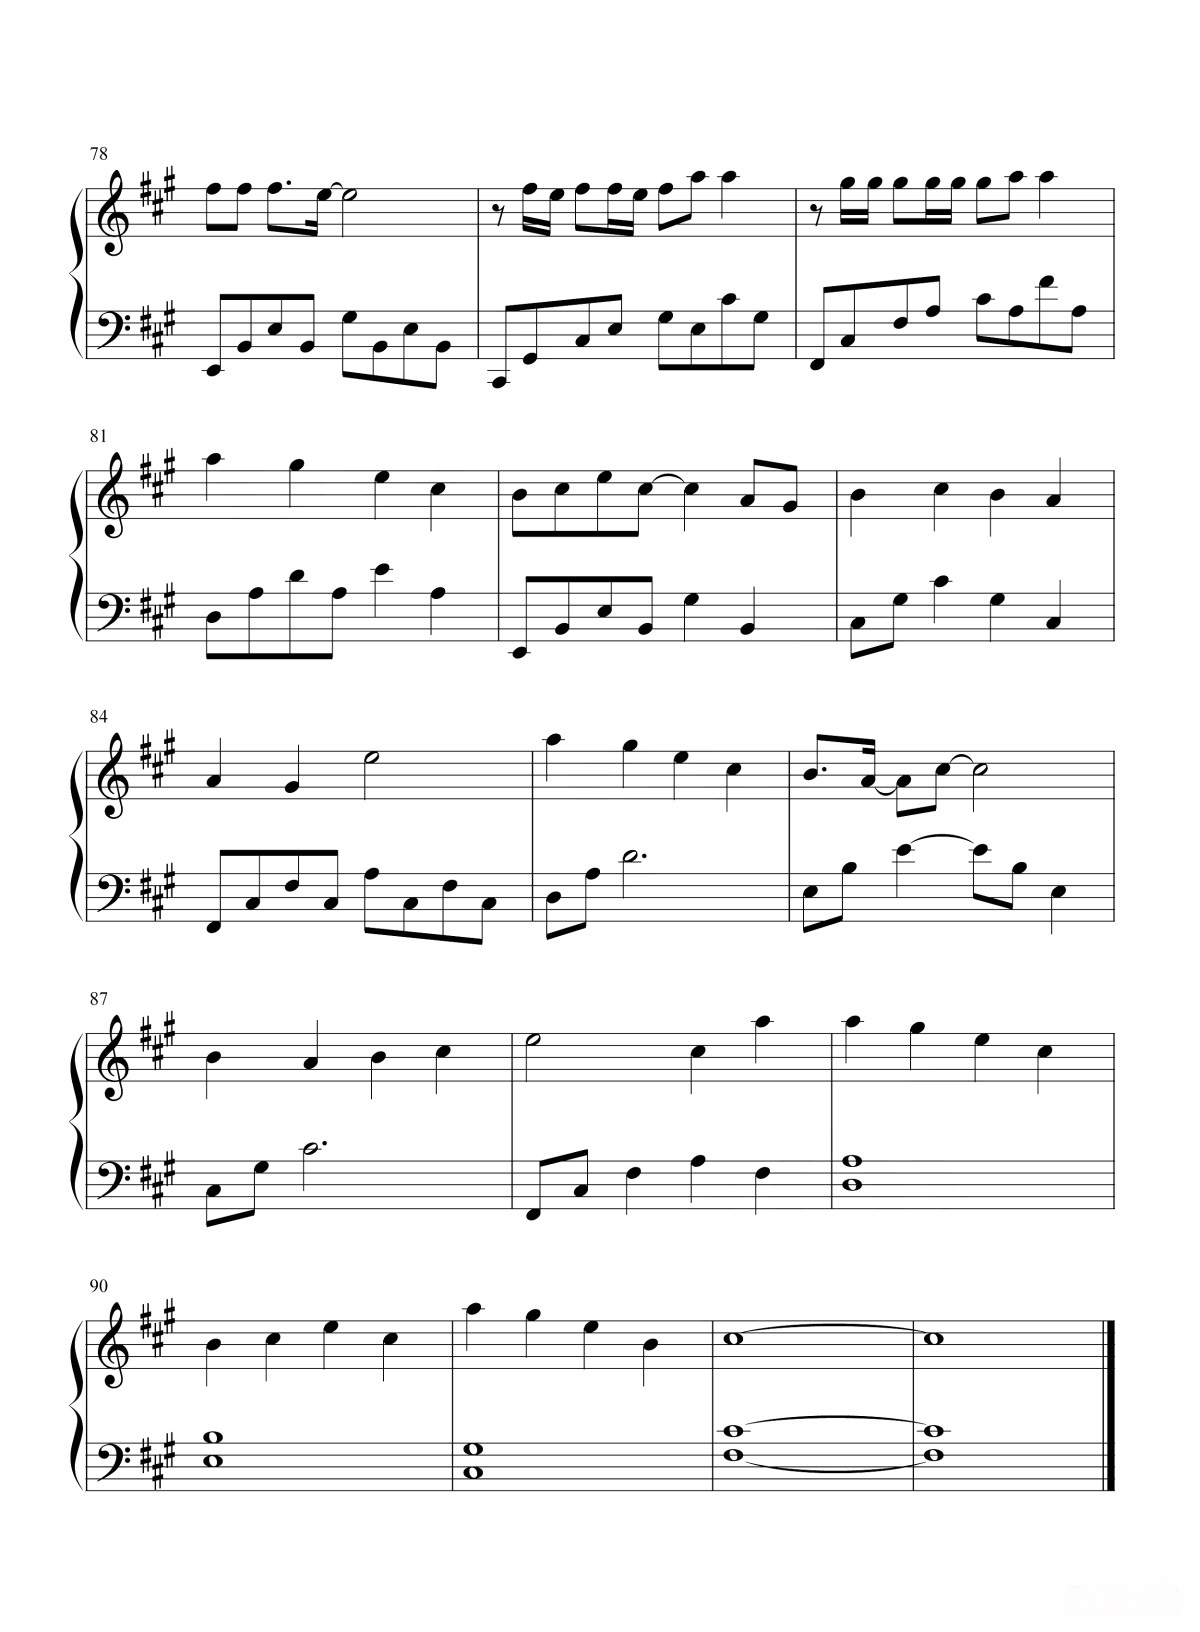 【玫瑰少年】的钢琴谱简谱 - 五月天